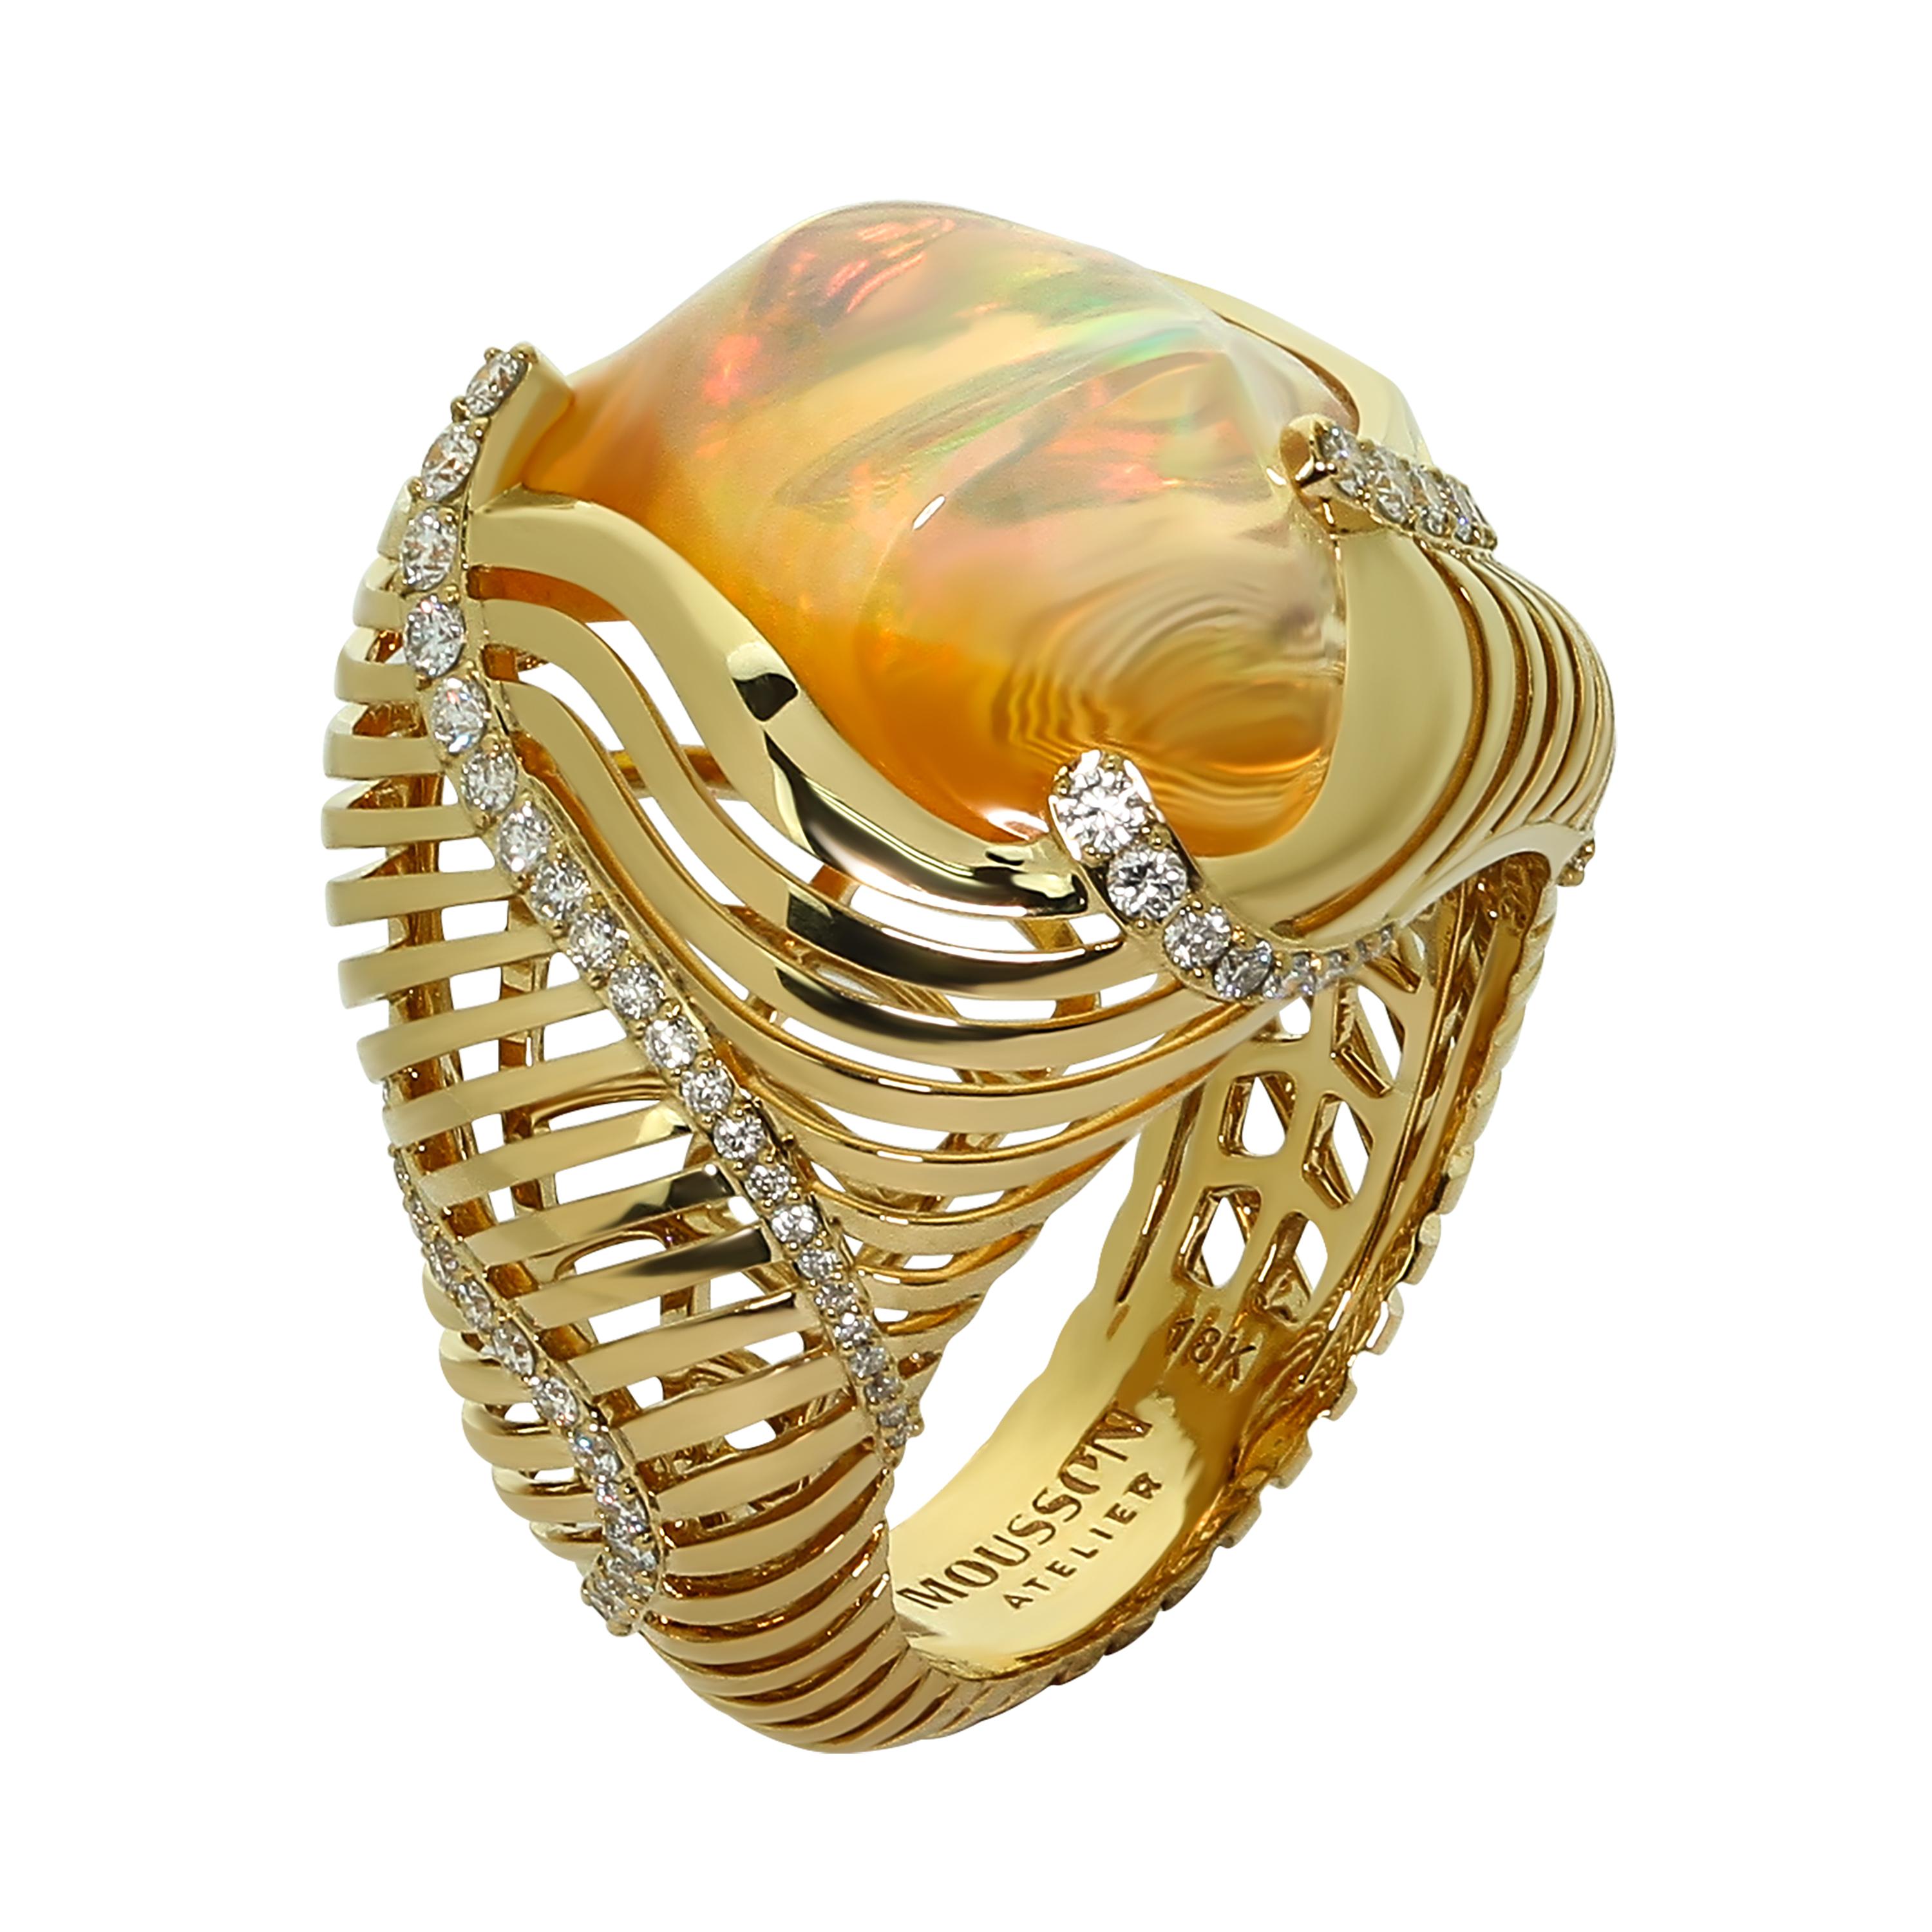 Ring aus 18 Karat Gelbgold mit mexikanischem Feueropal und Diamanten in Weiß
Opale lassen sich im Gegensatz zu vielen anderen Steinen kaum schleifen, sie sind immer einzigartig. Schmuck mit Opalen ist daher immer Improvisation. So war es auch bei